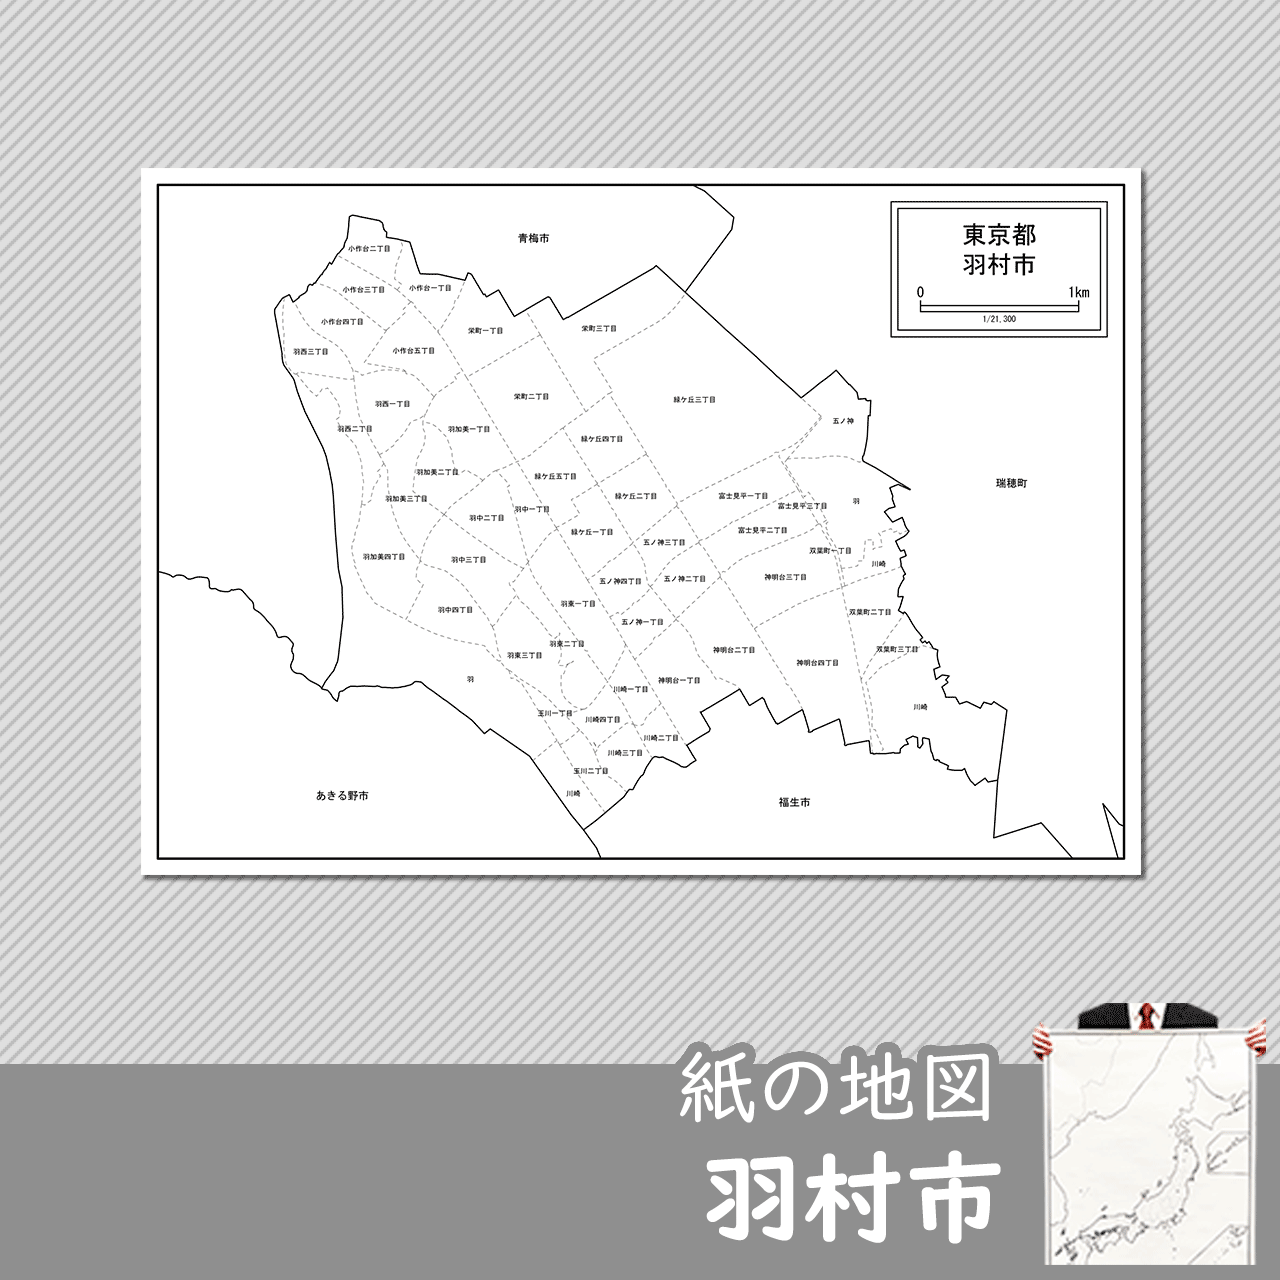 羽村市の白地図